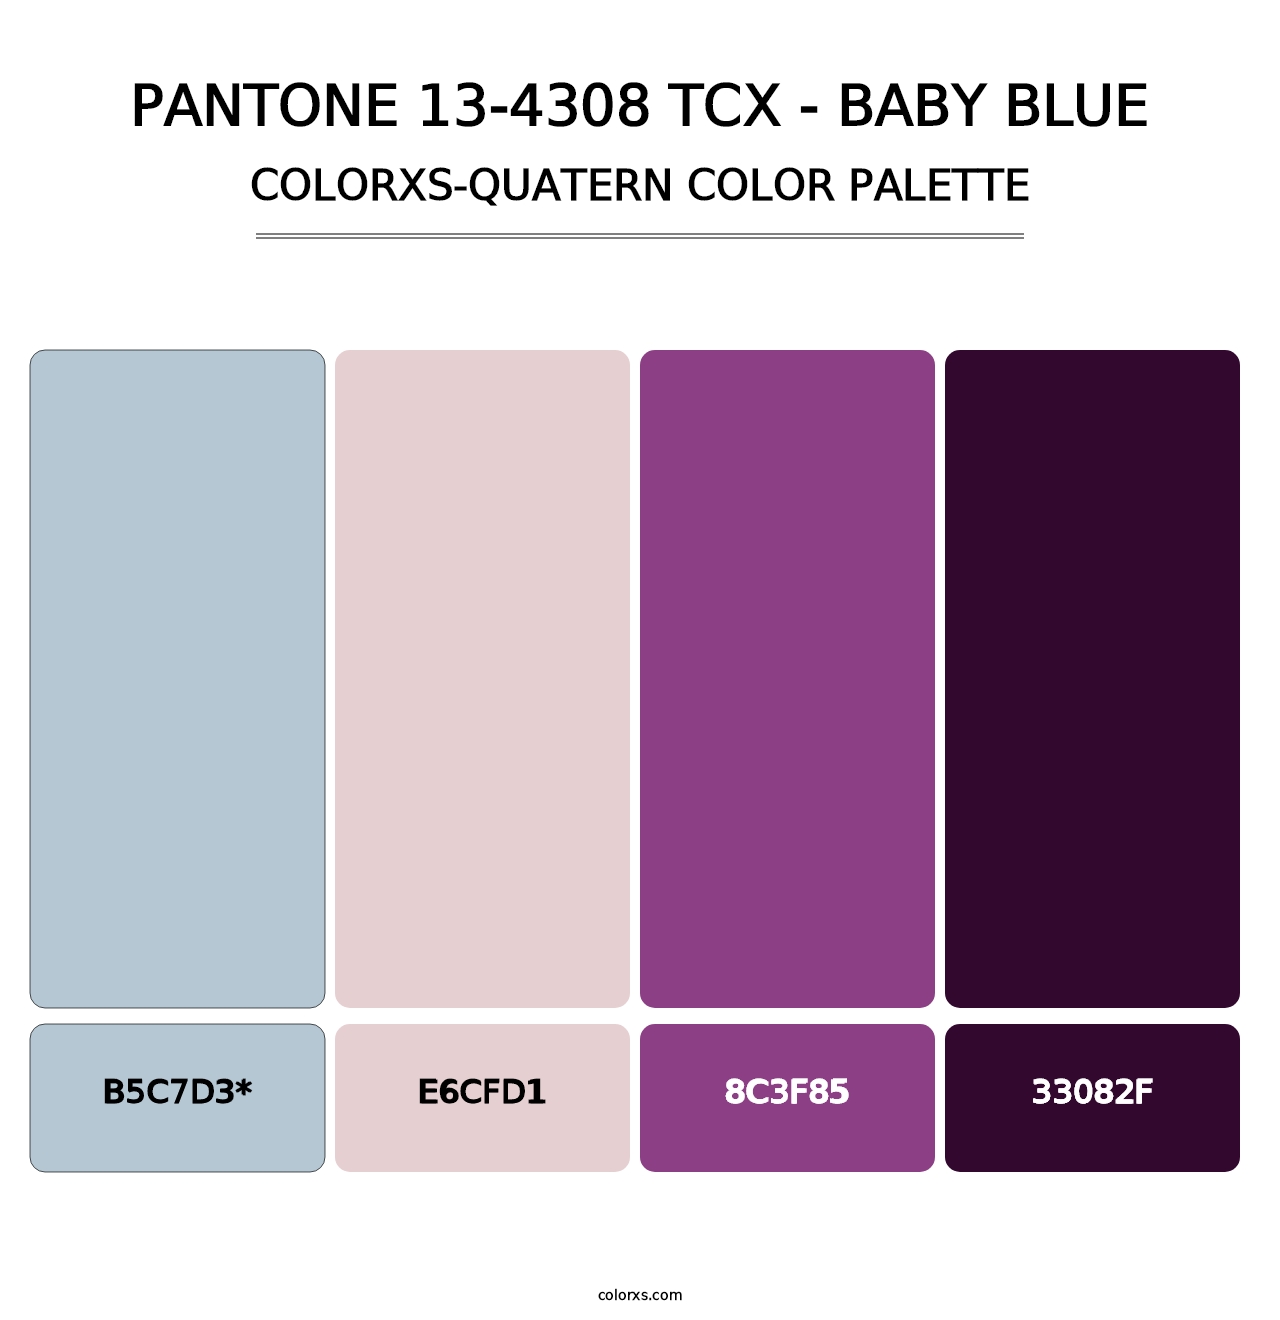 PANTONE 13-4308 TCX - Baby Blue - Colorxs Quatern Palette